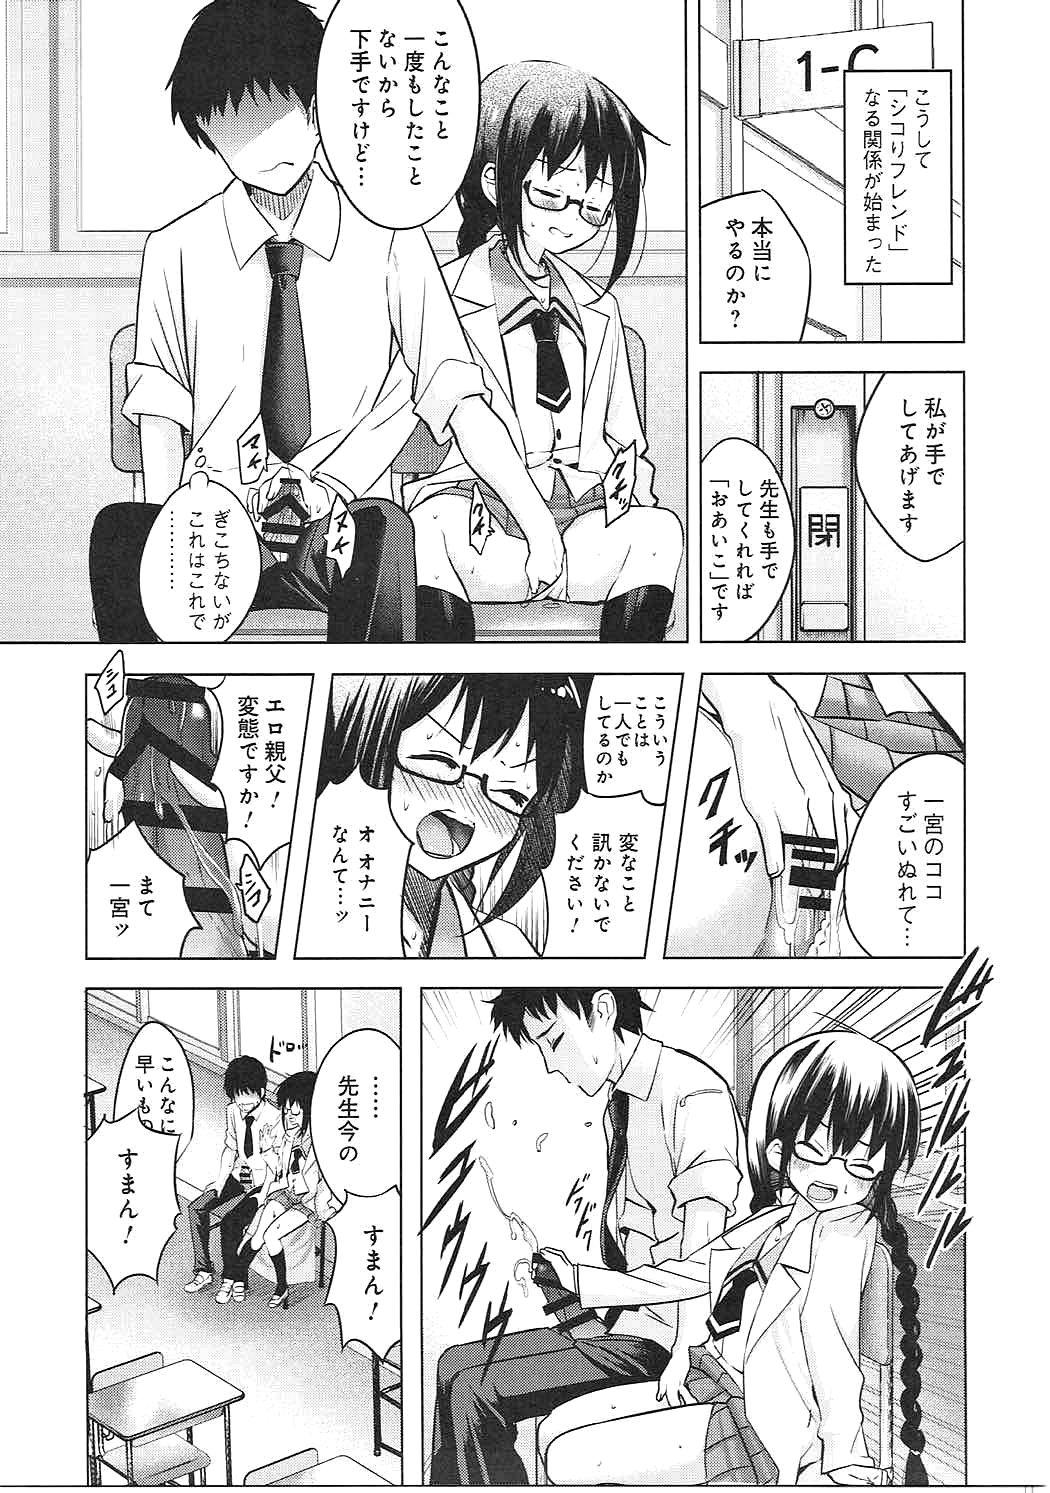 Sex Toys Watashi wa Sensei no Shikotomo desu! - Omaera zenin mendokusai Tight - Page 8